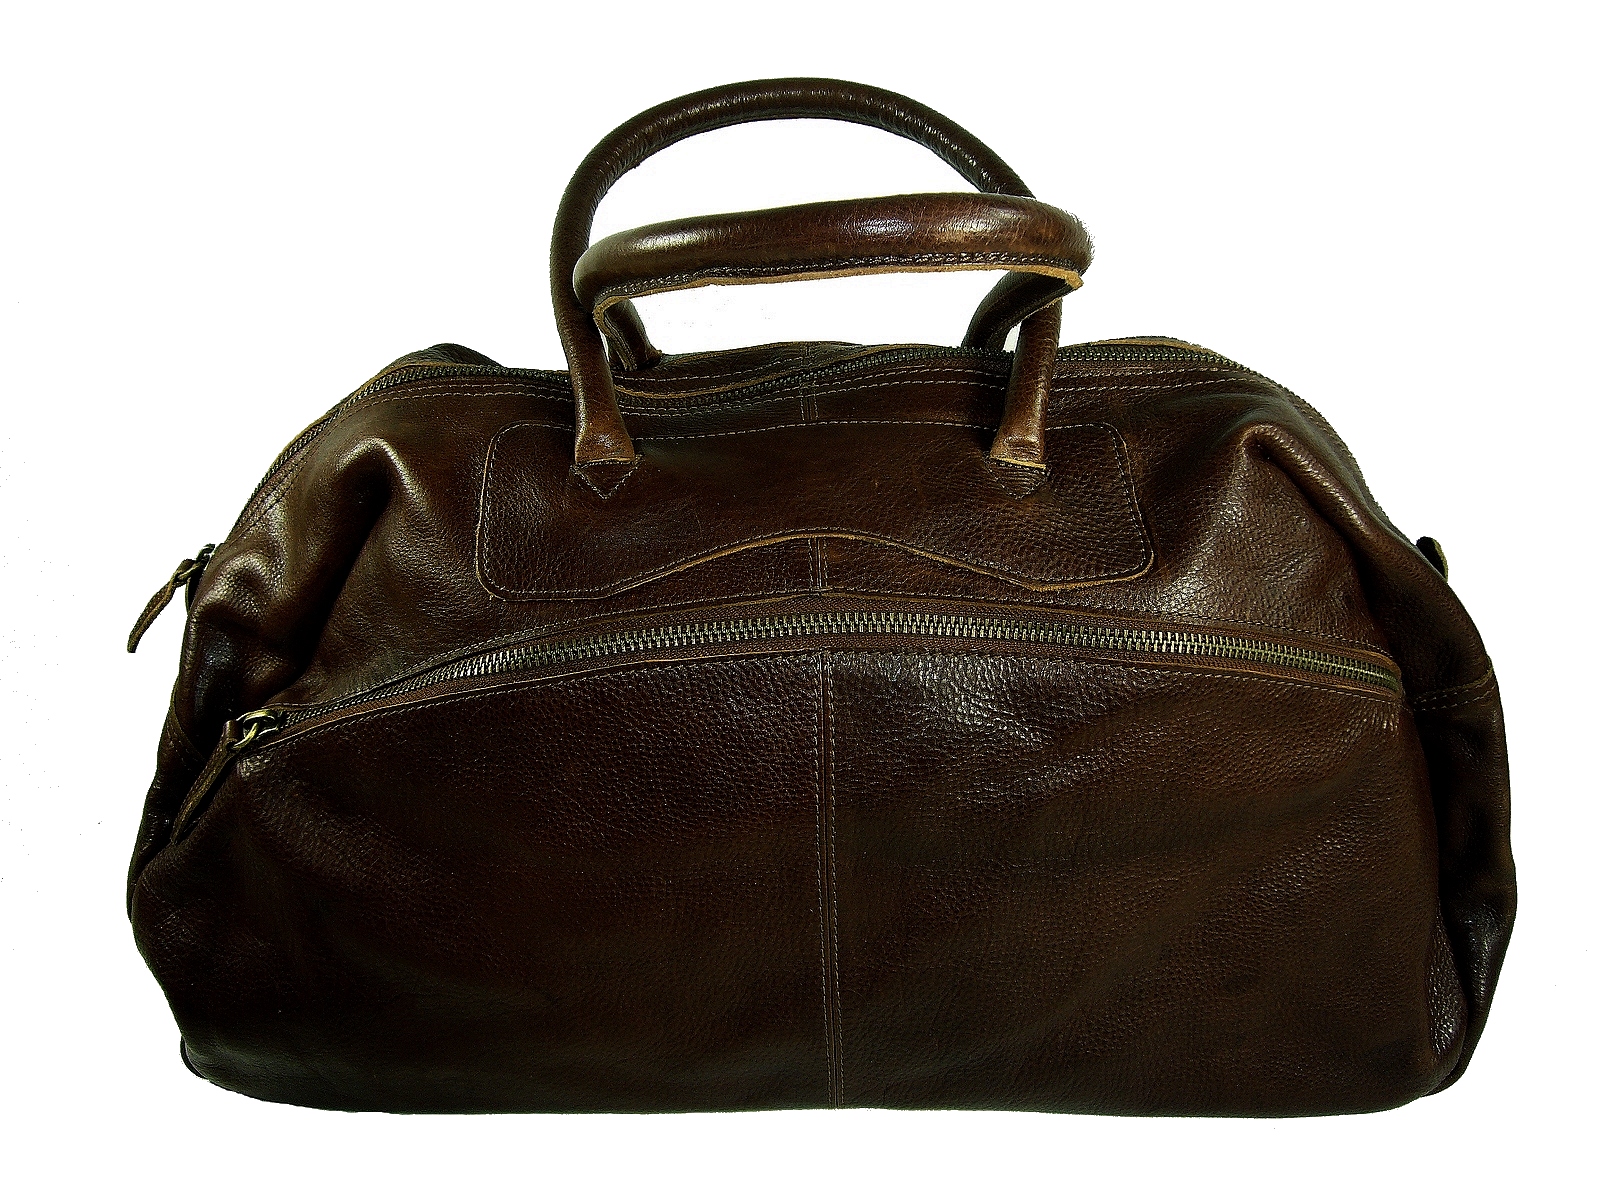 Sac de voyage en cuir homme femme bandoulière en cuir sac de sport en cuir bagage à main noir sac bagage a main en cuir 